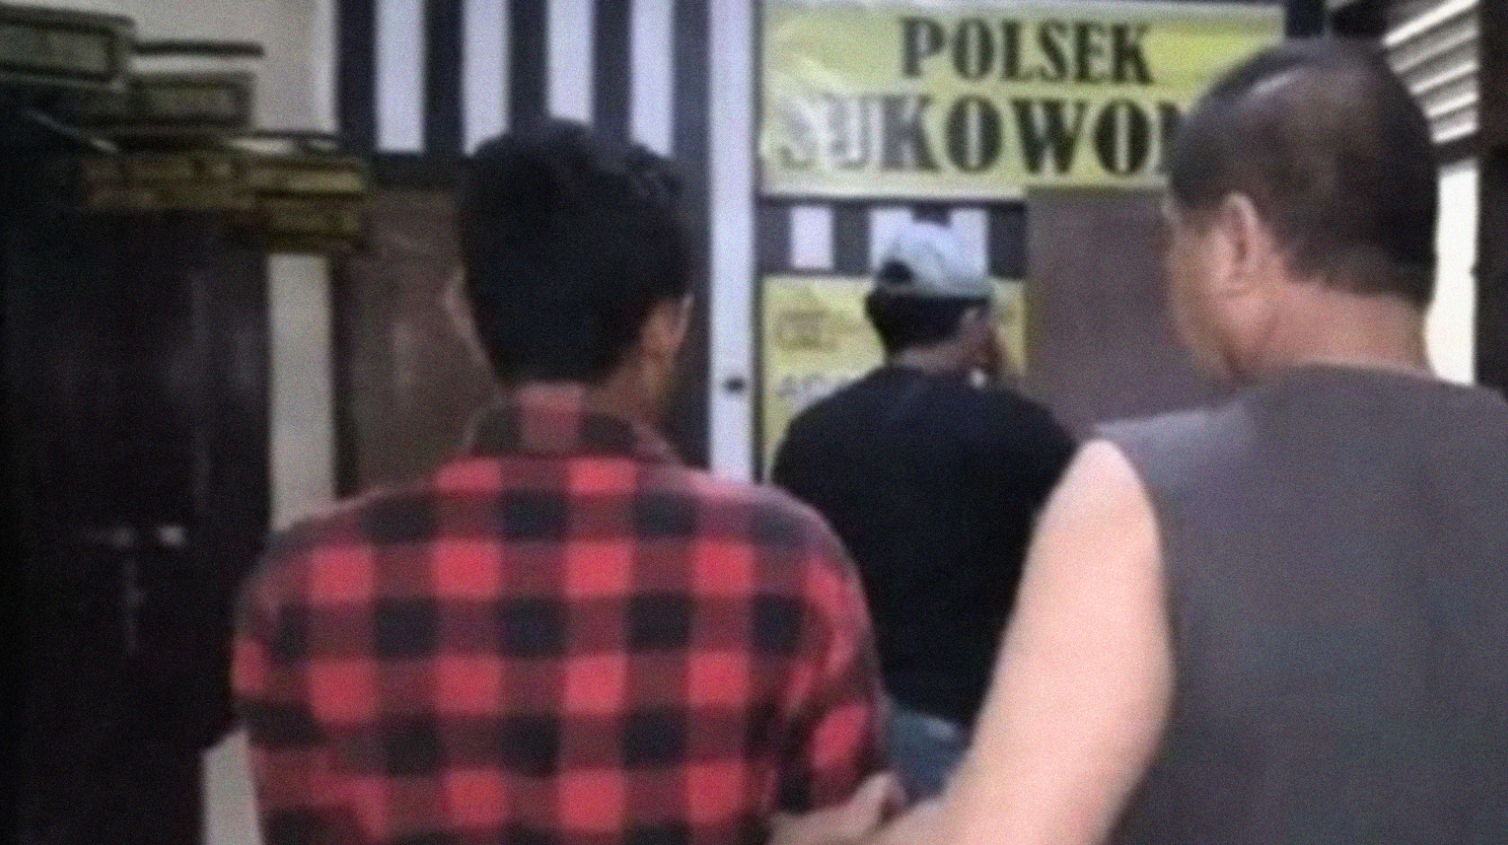 Tersangka ditahan di Polsek Sukowono (Foto:Istimewa)